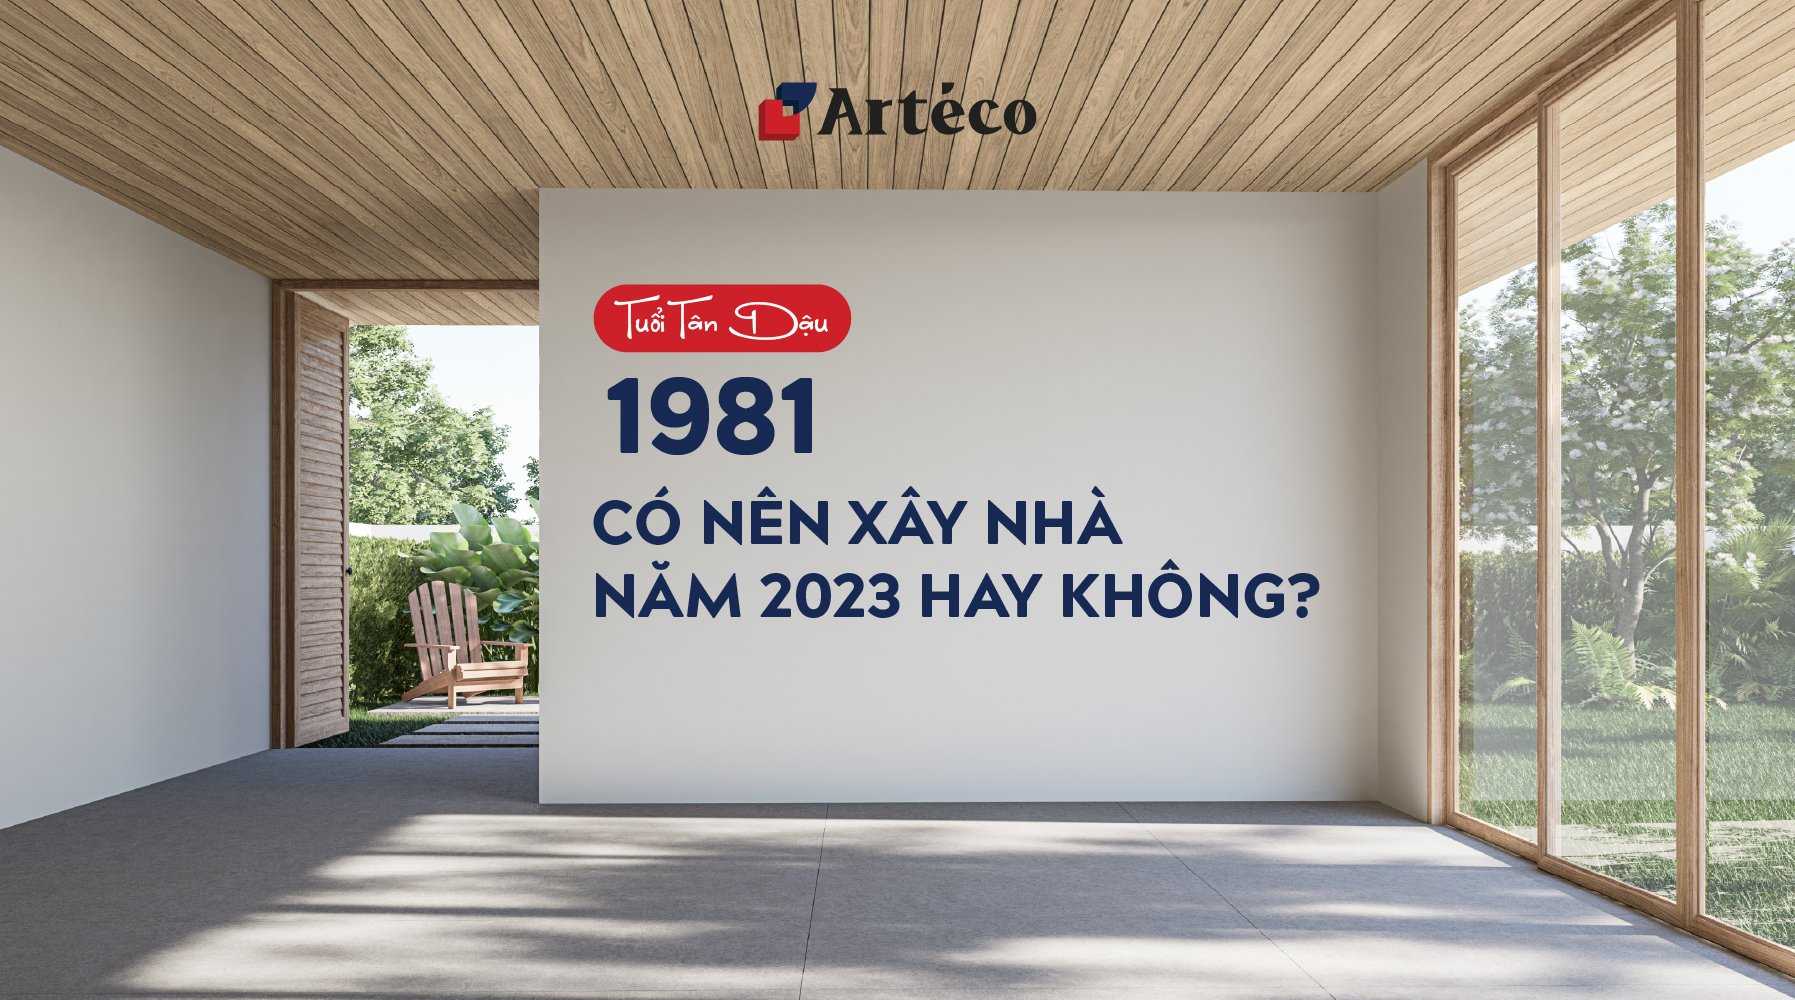 Tuổi Tân Dậu 1981 có nên xây nhà năm 2023 hay không  Artéco